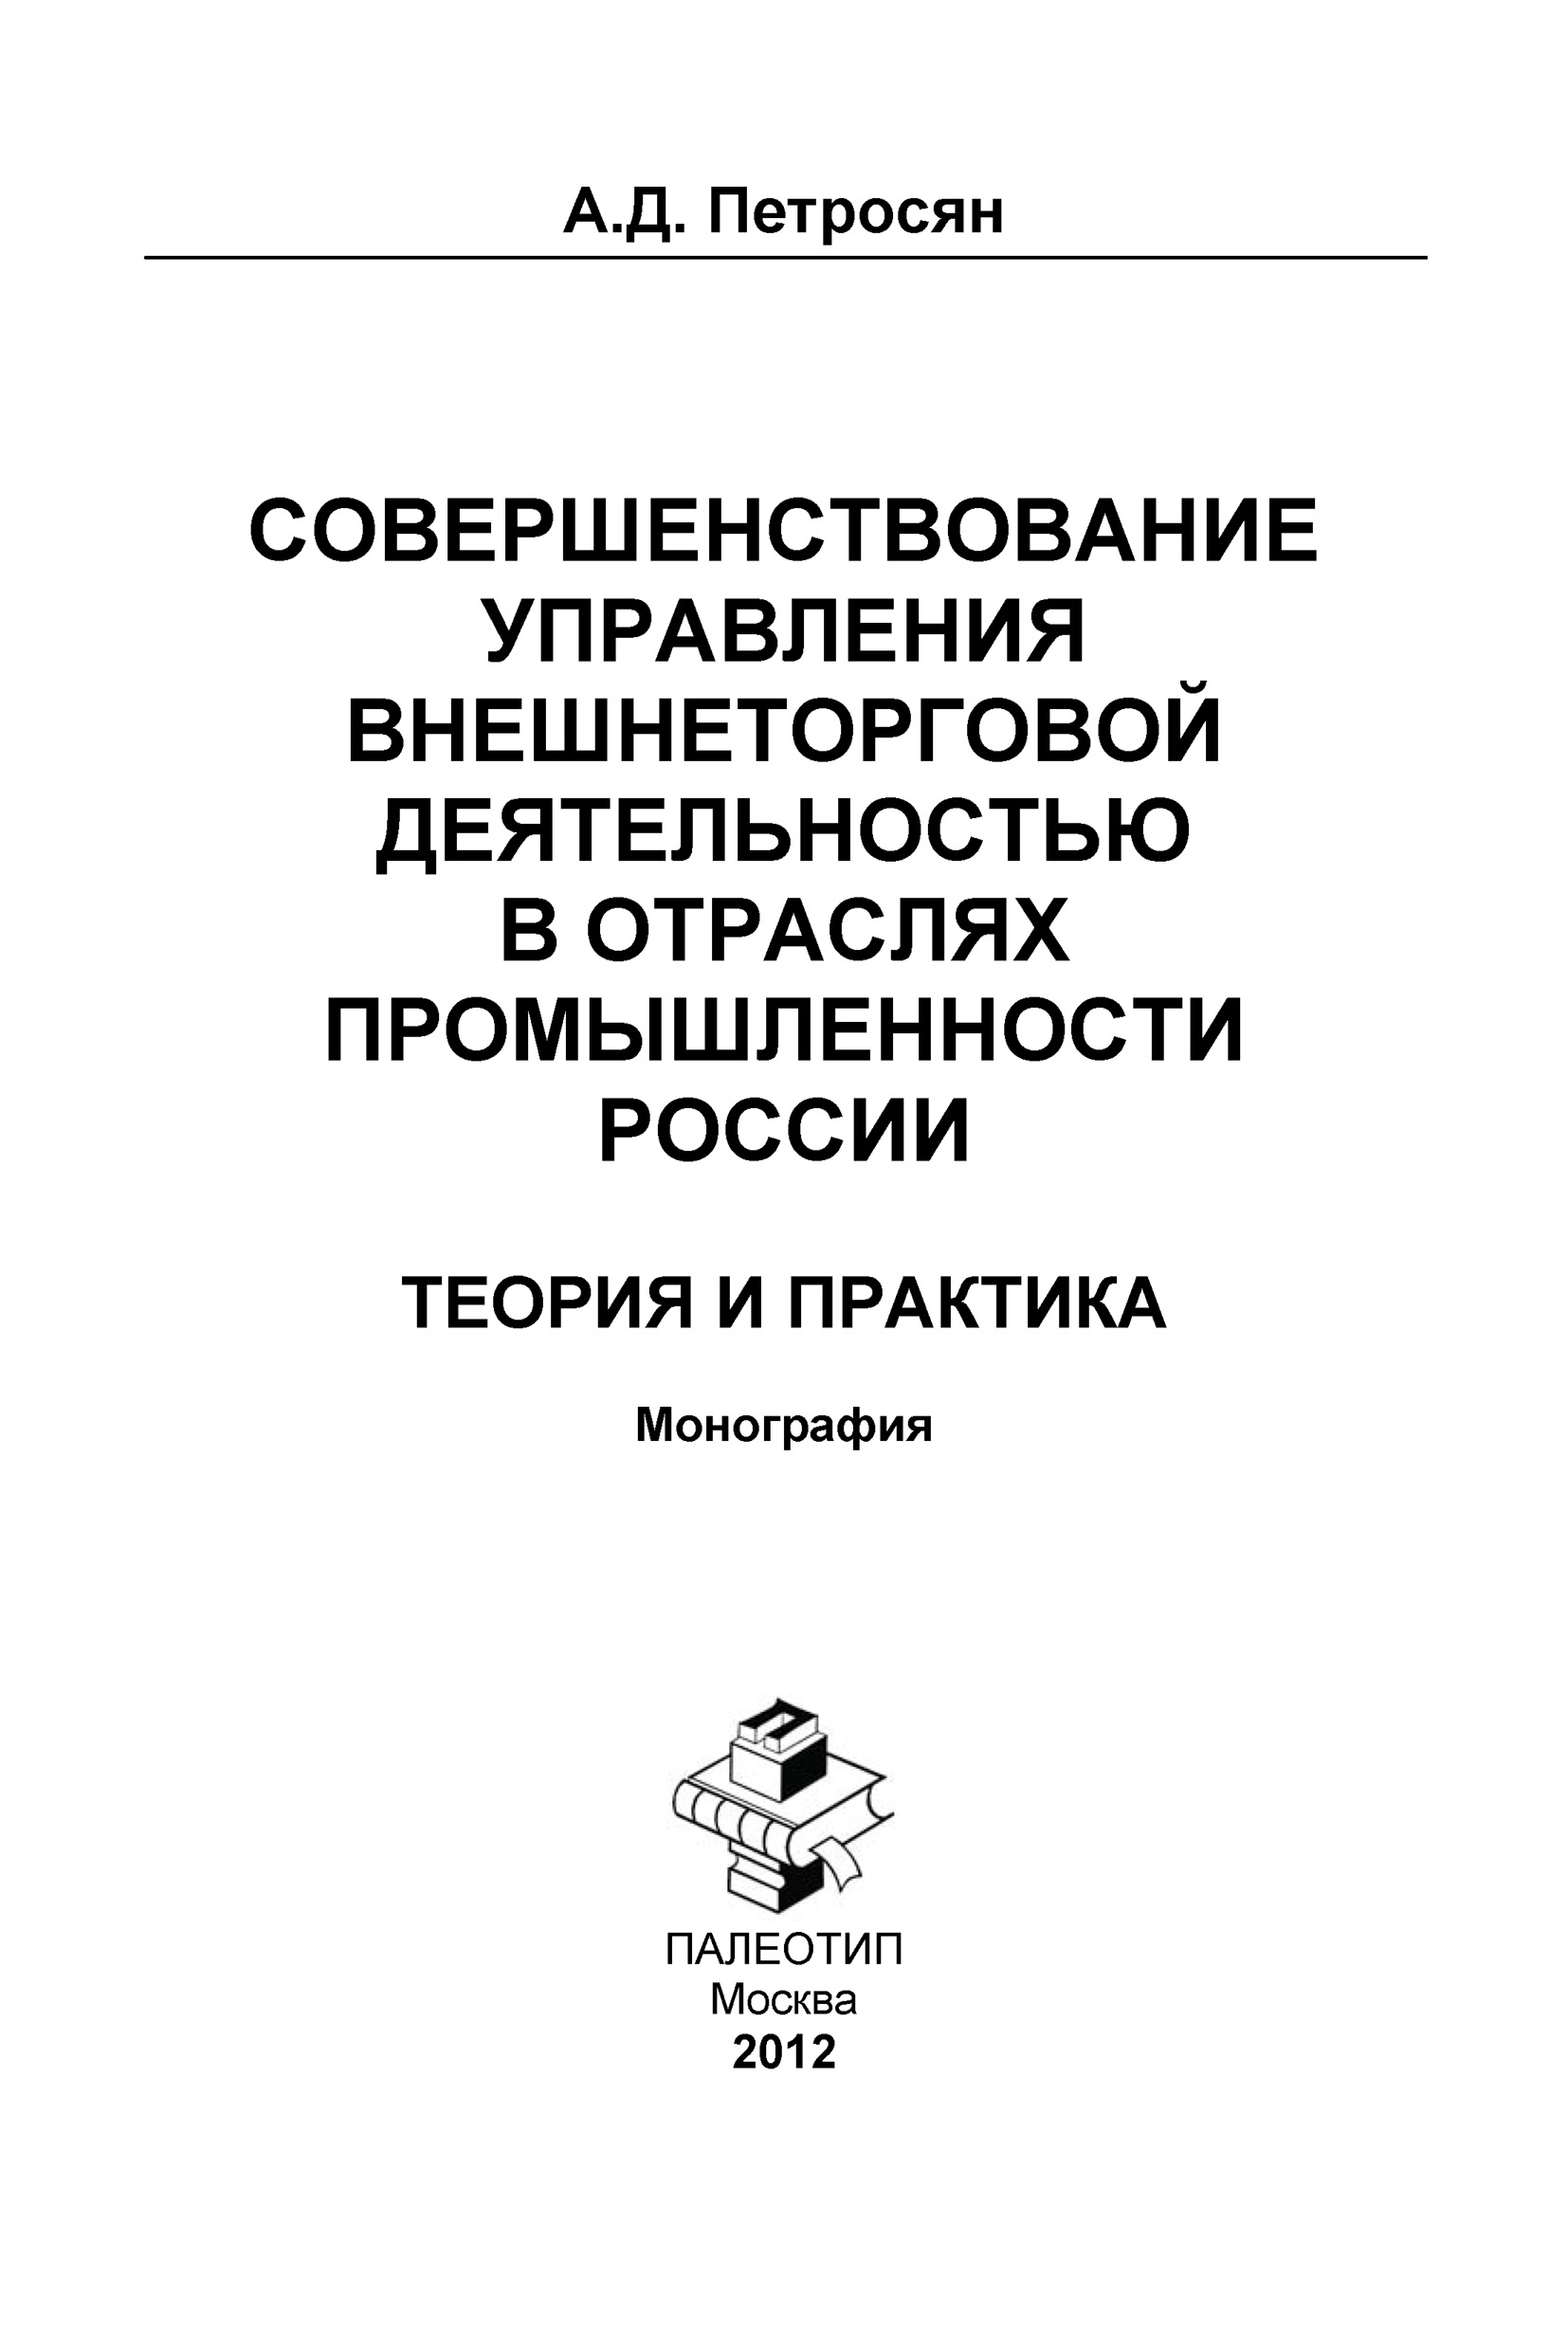 Совершенствование управления внешнеторговой деятельностью в отраслях промышленности России. Теория и практика